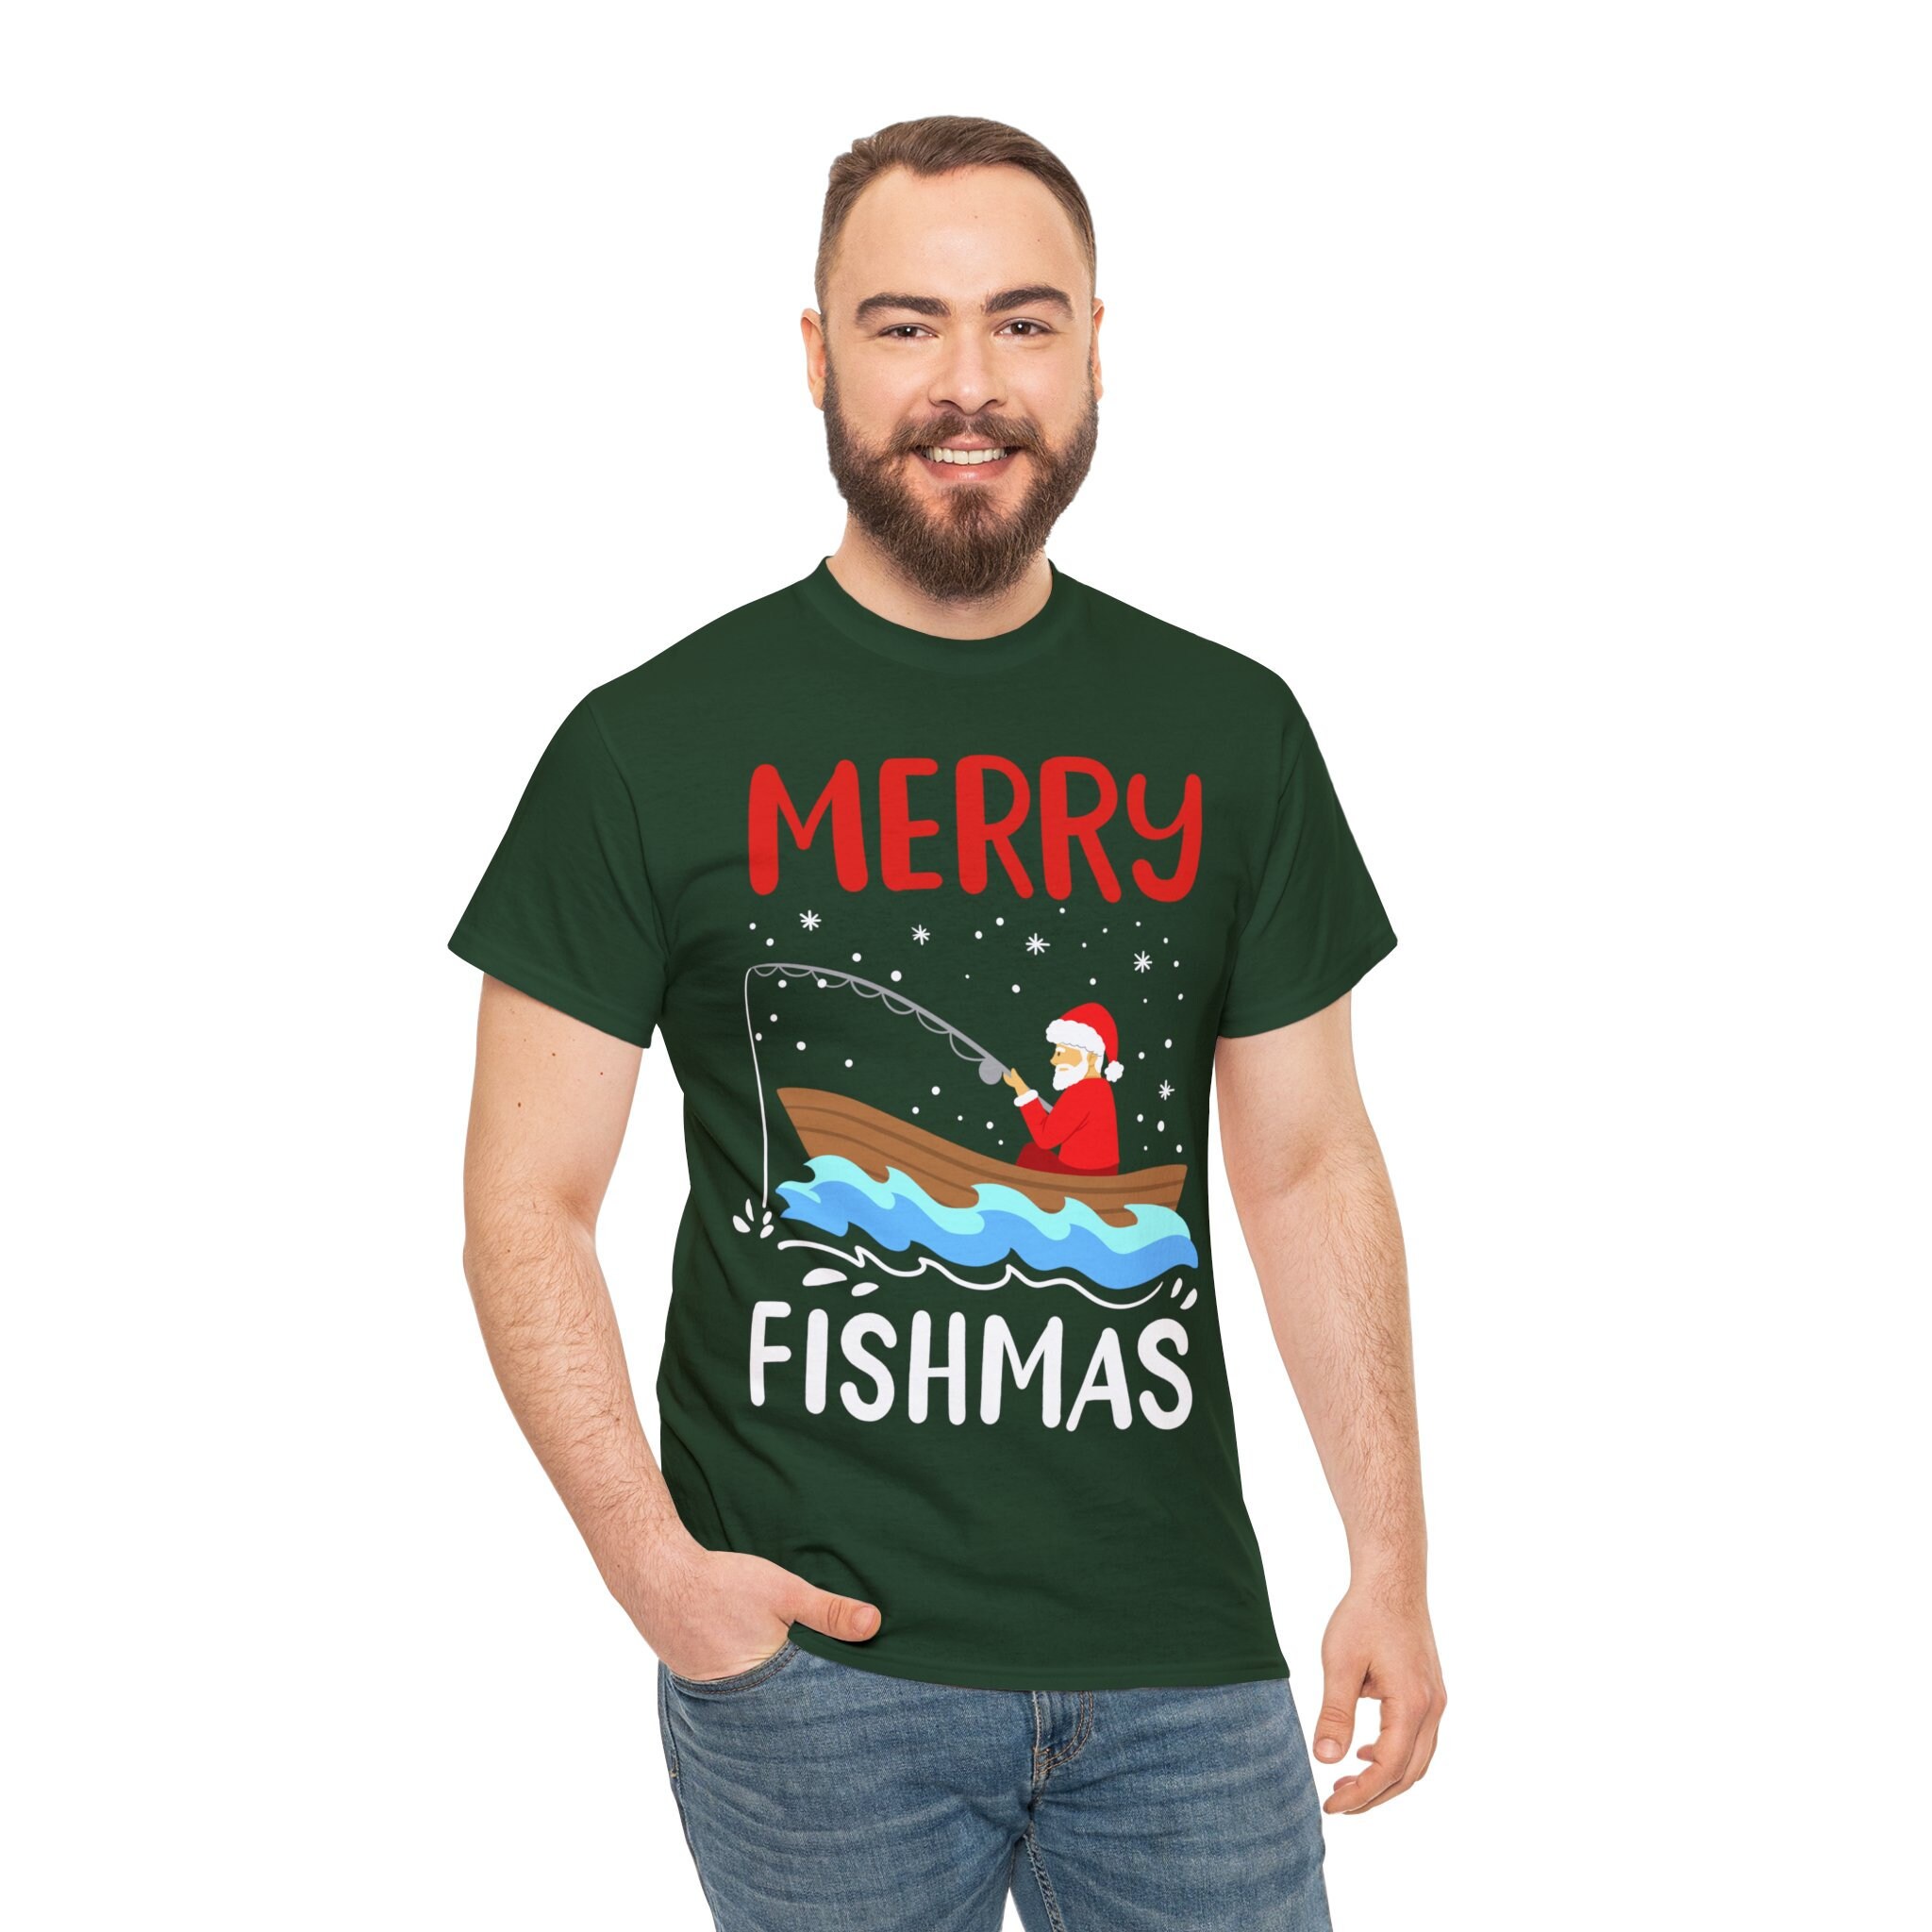 Merry Fishmas -  UK